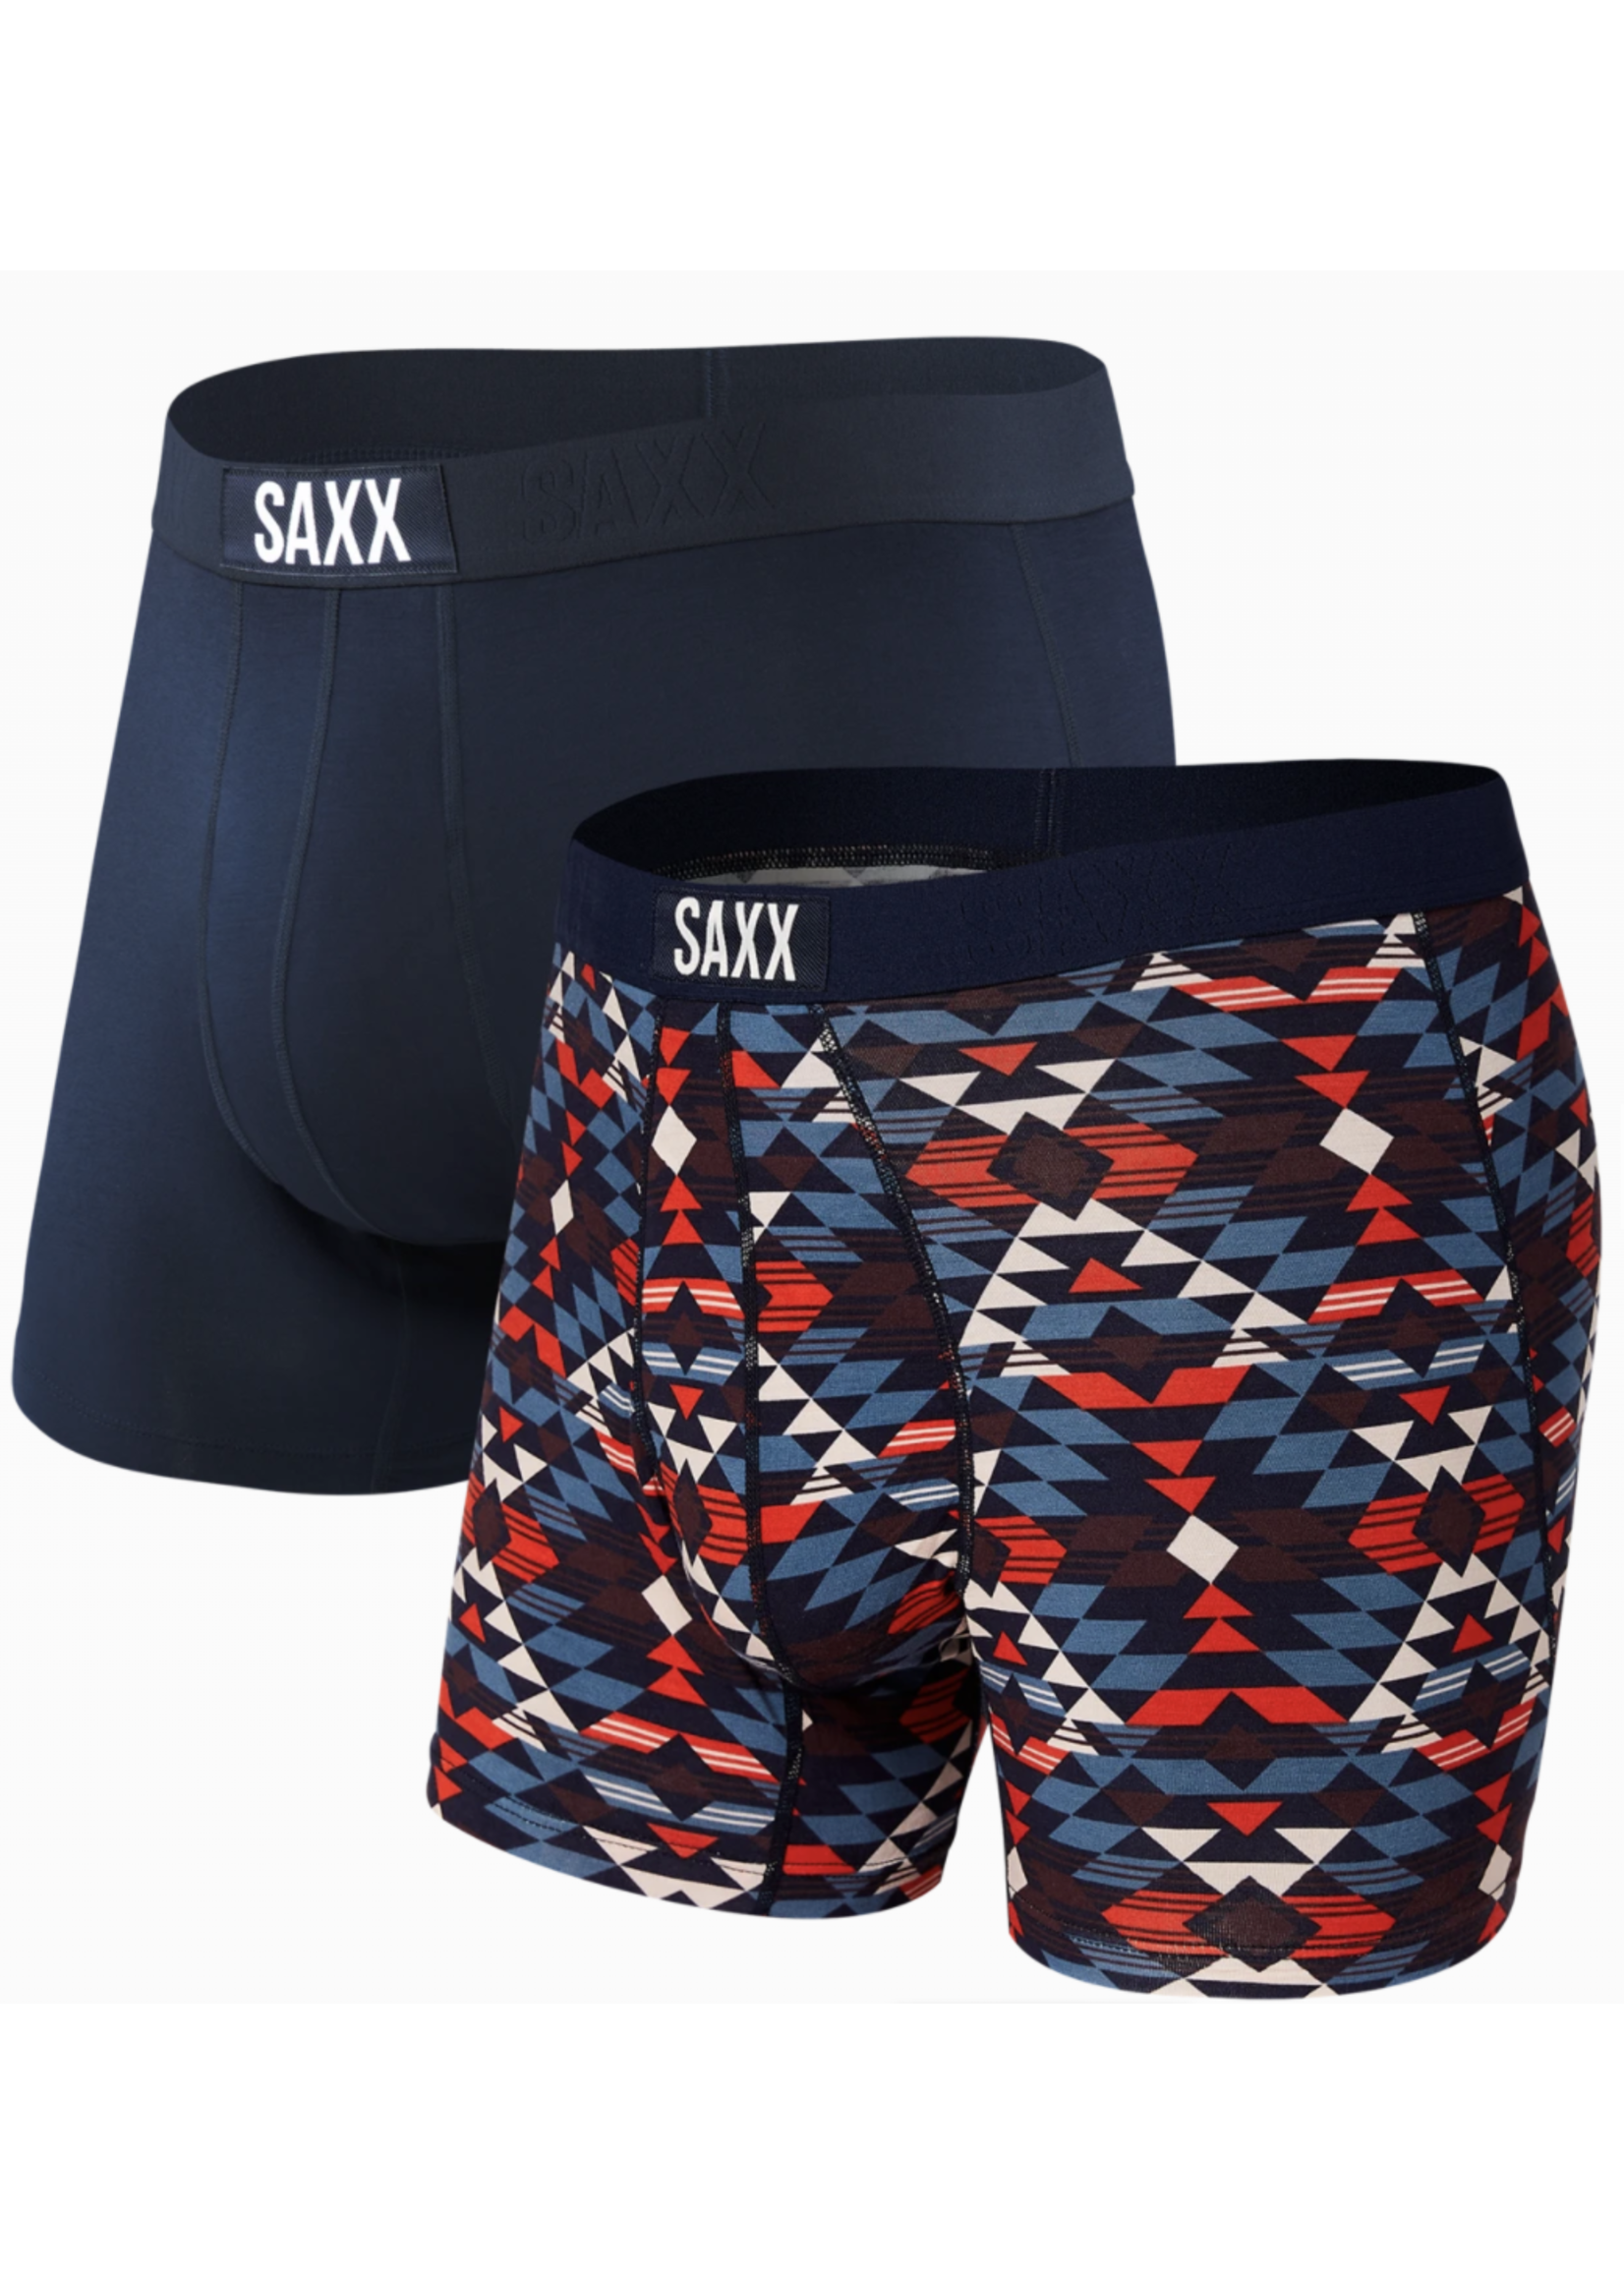 Saxx Vibe Boxer Brief El Dorado/Navy 2 Pack